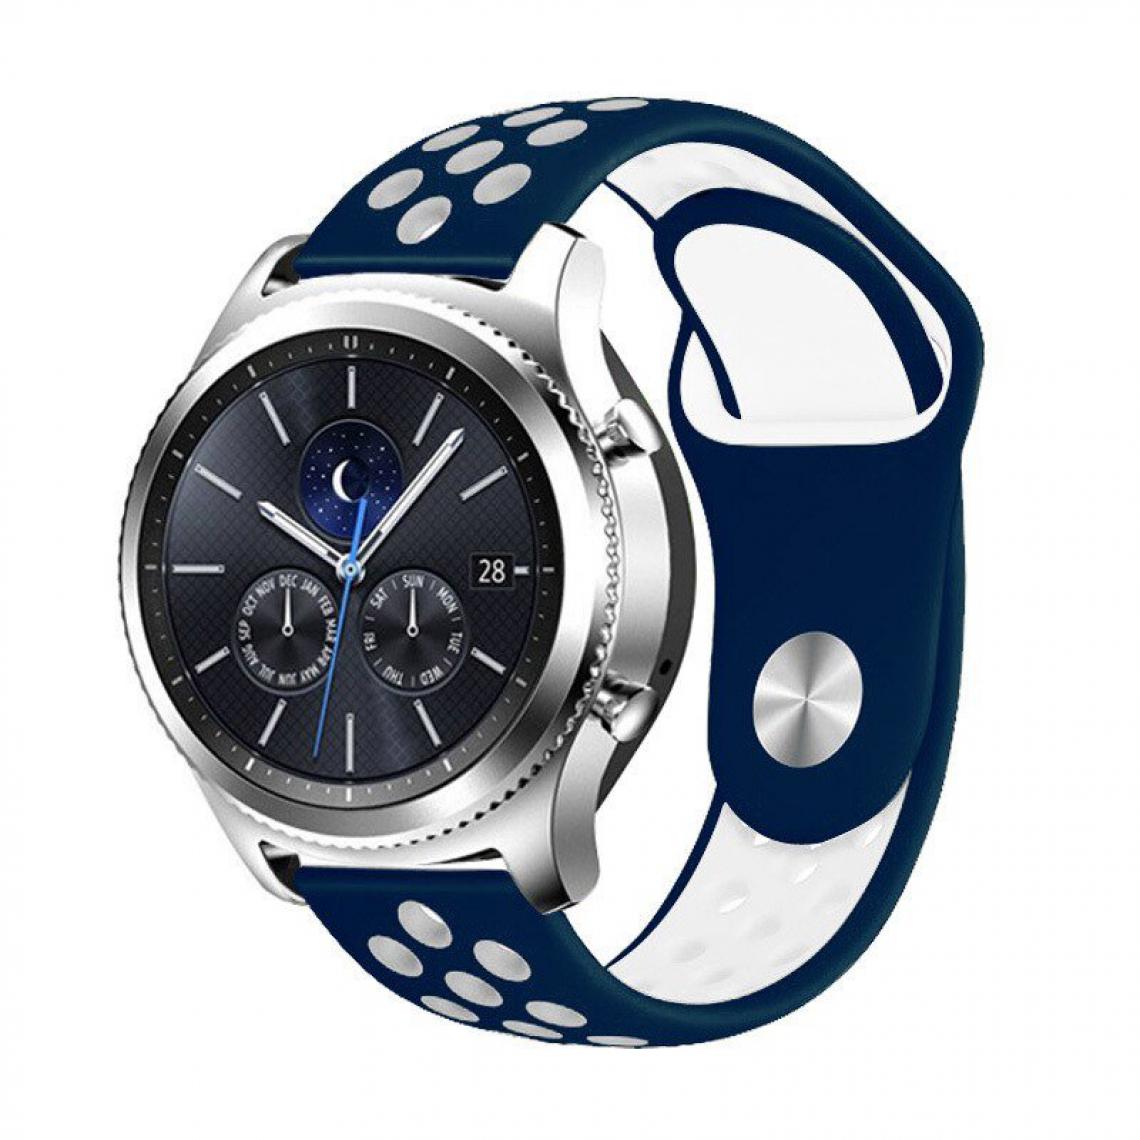 Phonecare - Bracelet SportyStyle pour Samsung Galaxy Watch Bluetooth 46mm - Bleu foncé / Blanc - Autres accessoires smartphone